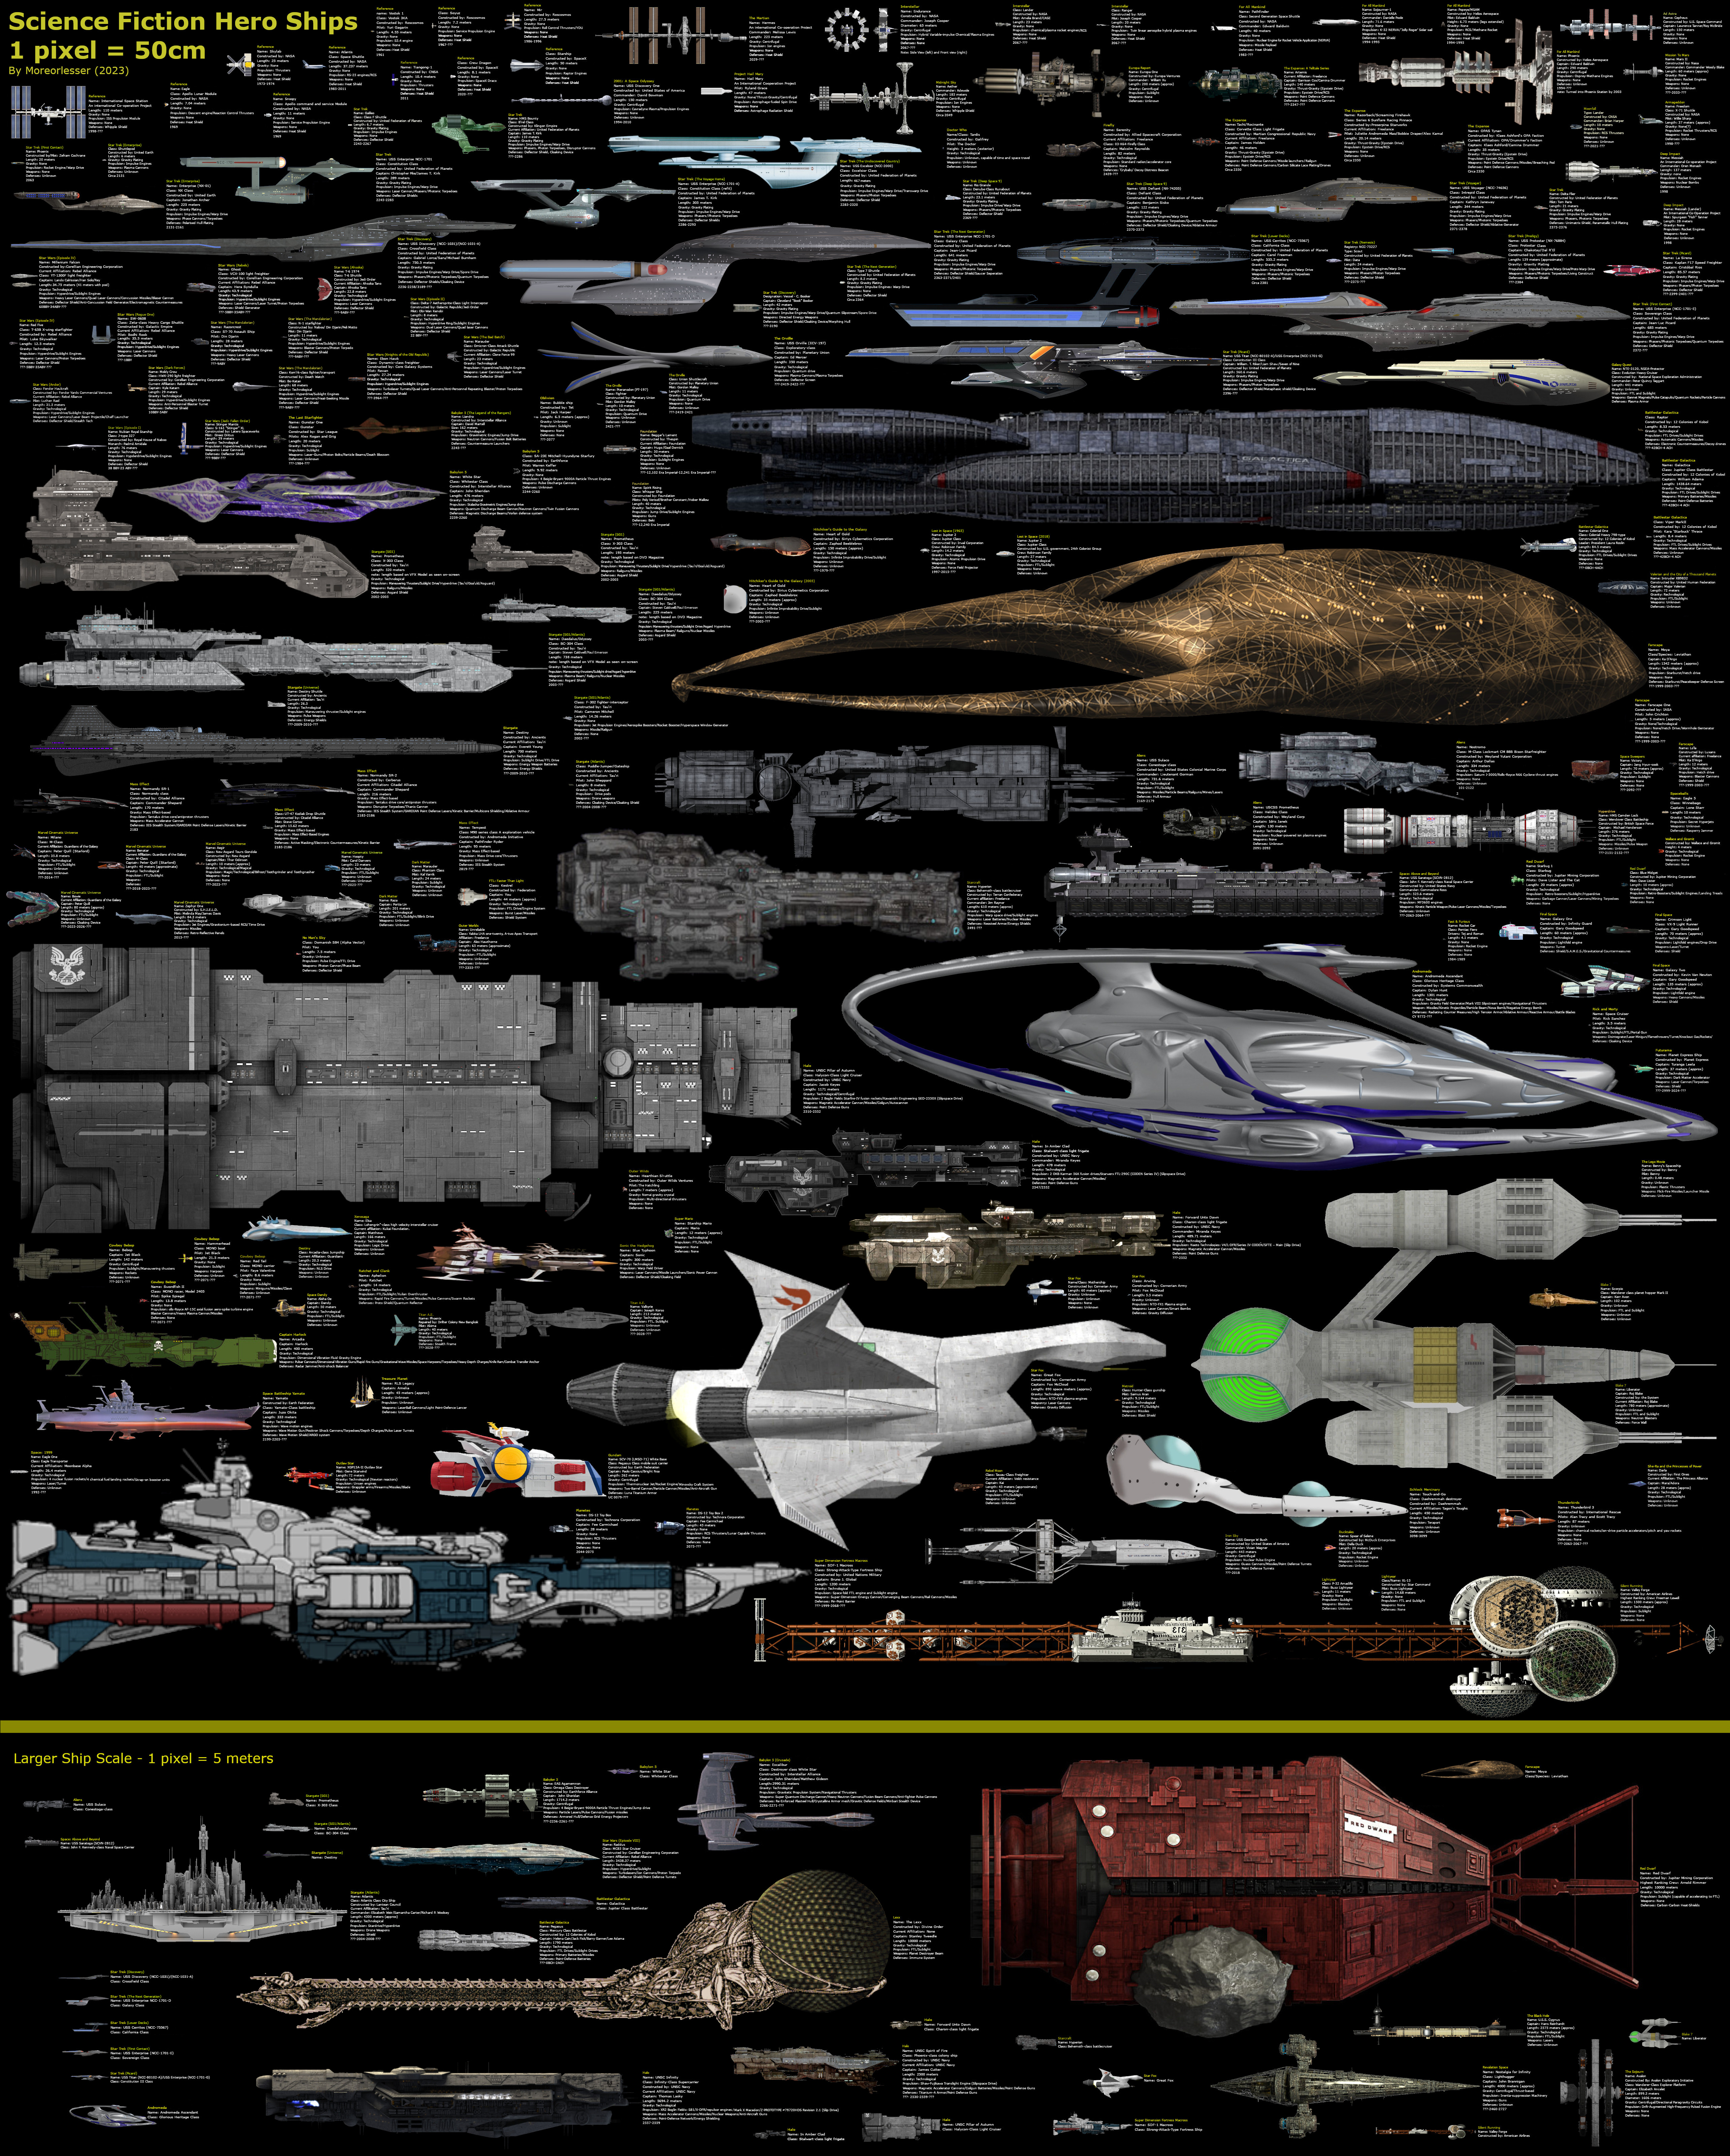 Size comparison: Buildings, Ships, Mecha, Vehicles by SRegan on